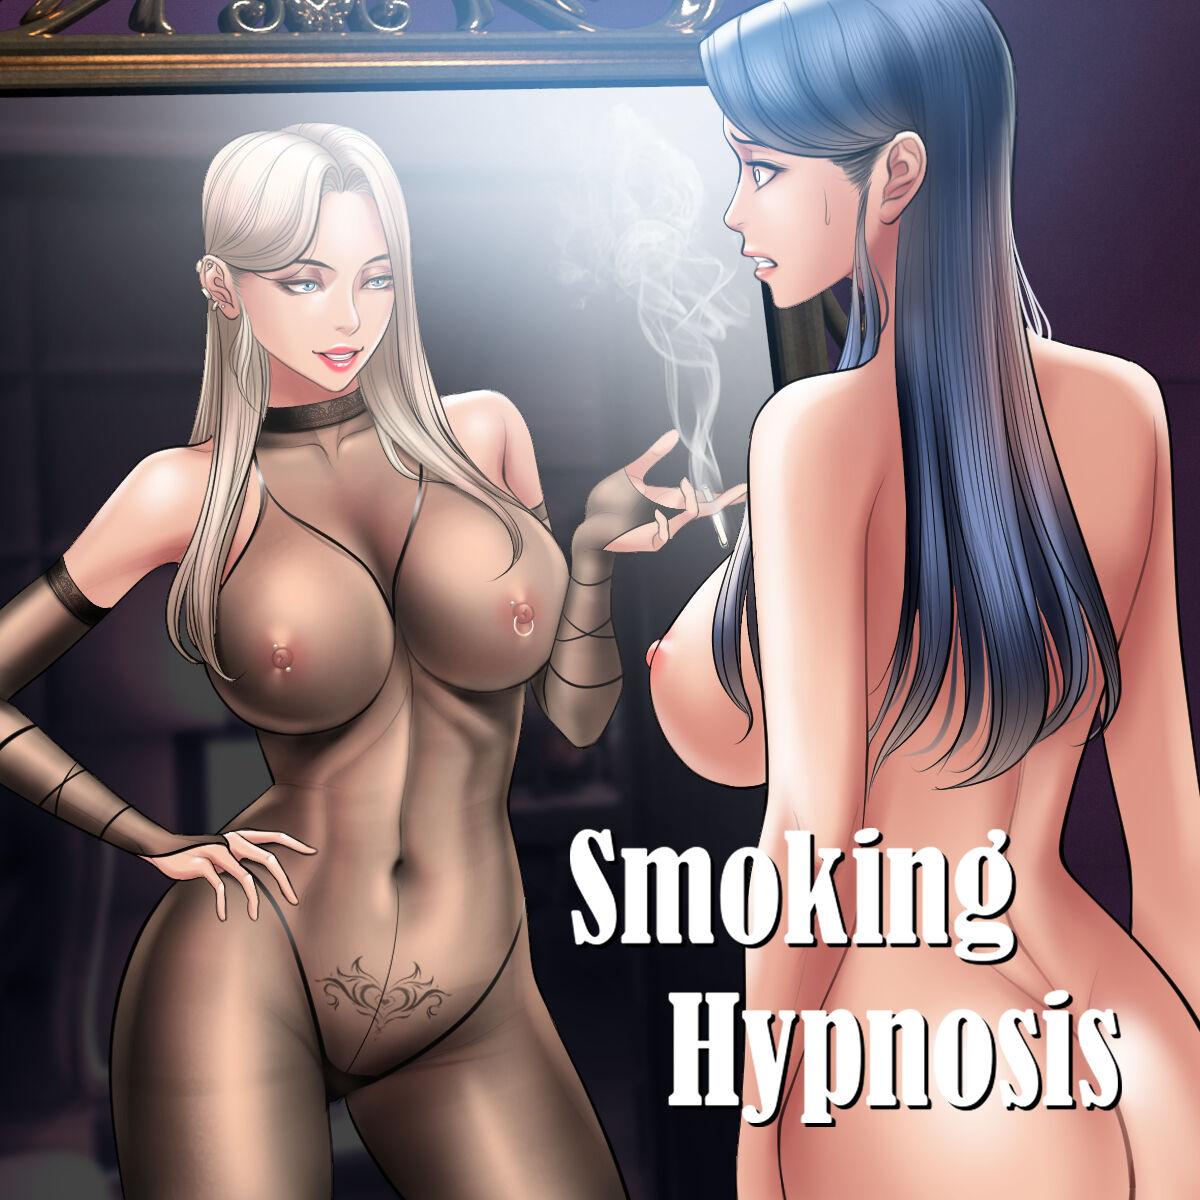 Smoking Hypnosis english rewrite 370